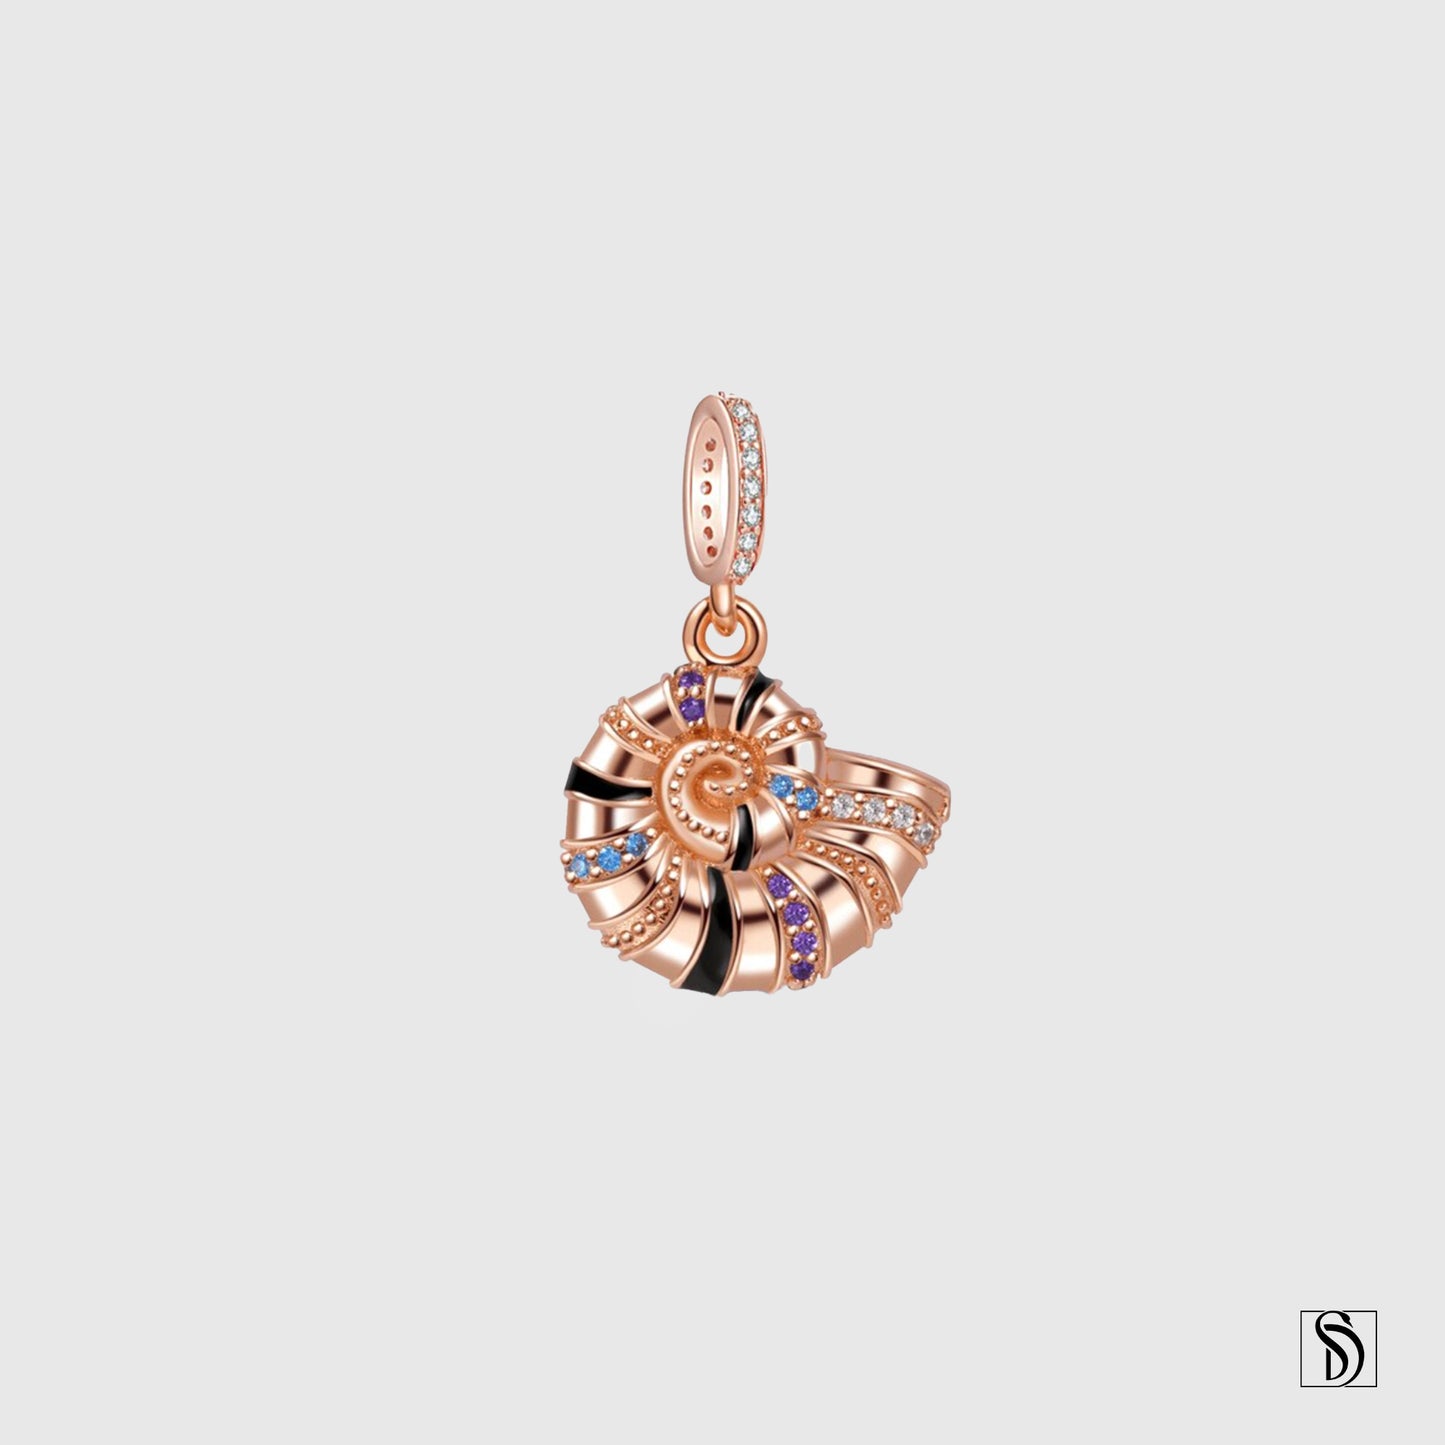 Rose Gold Nautilus Gemstones Pendant Necklace